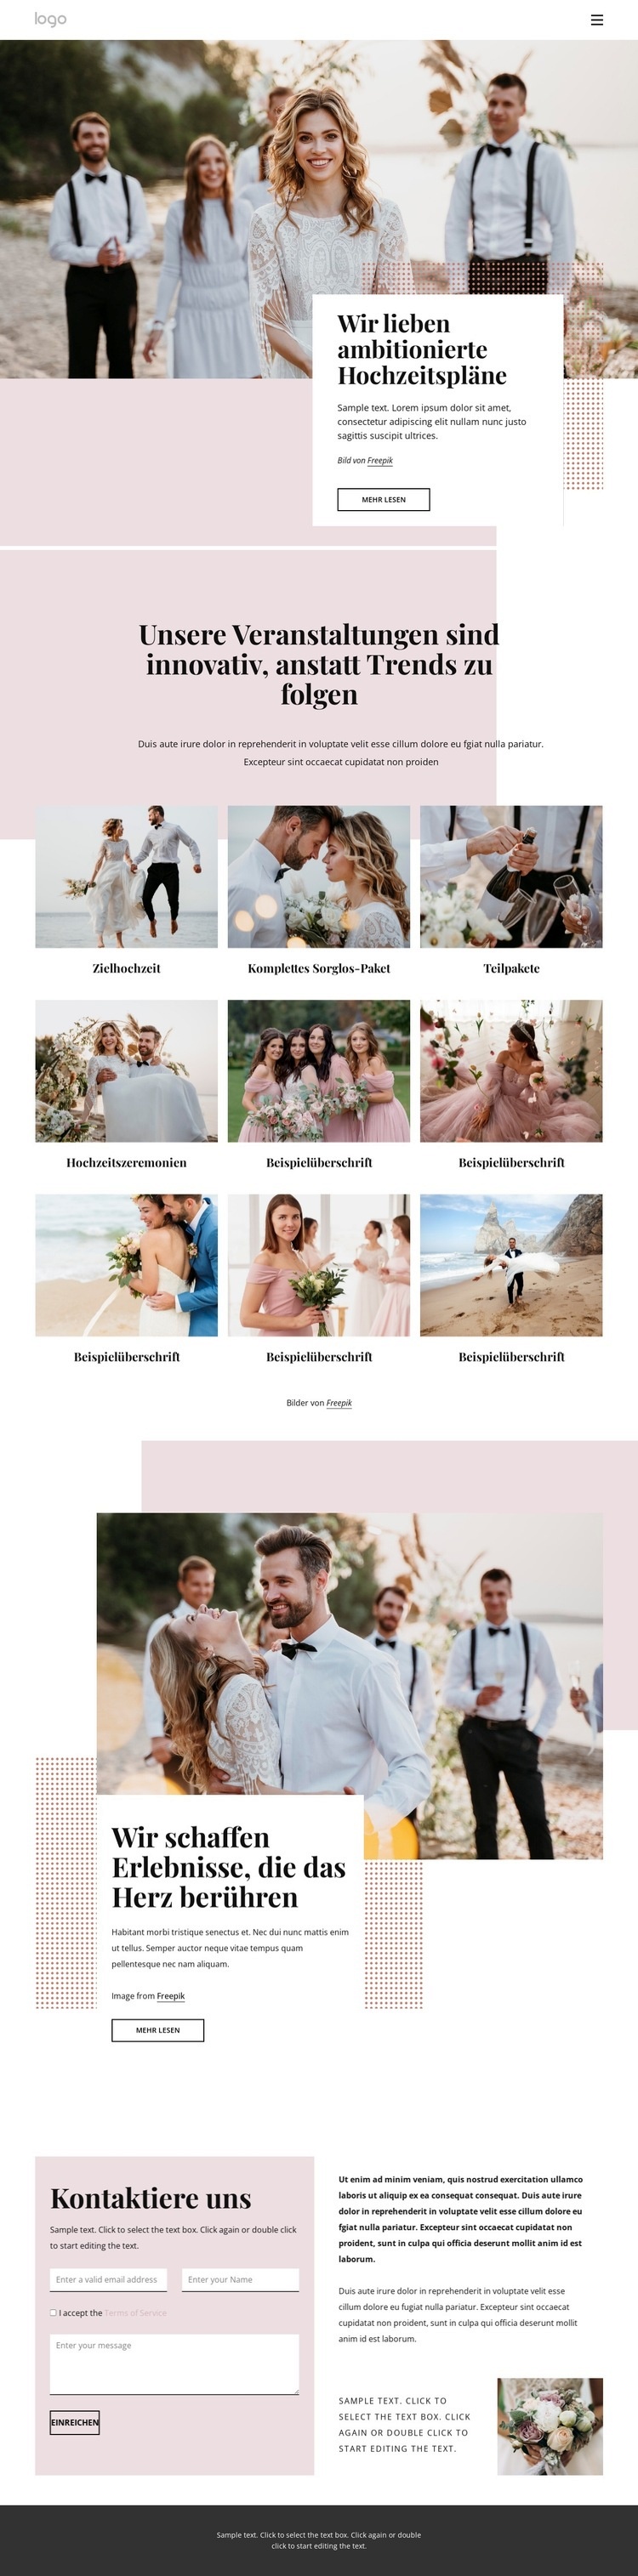 Wir lieben ambitionierte Hochzeitspläne HTML Website Builder